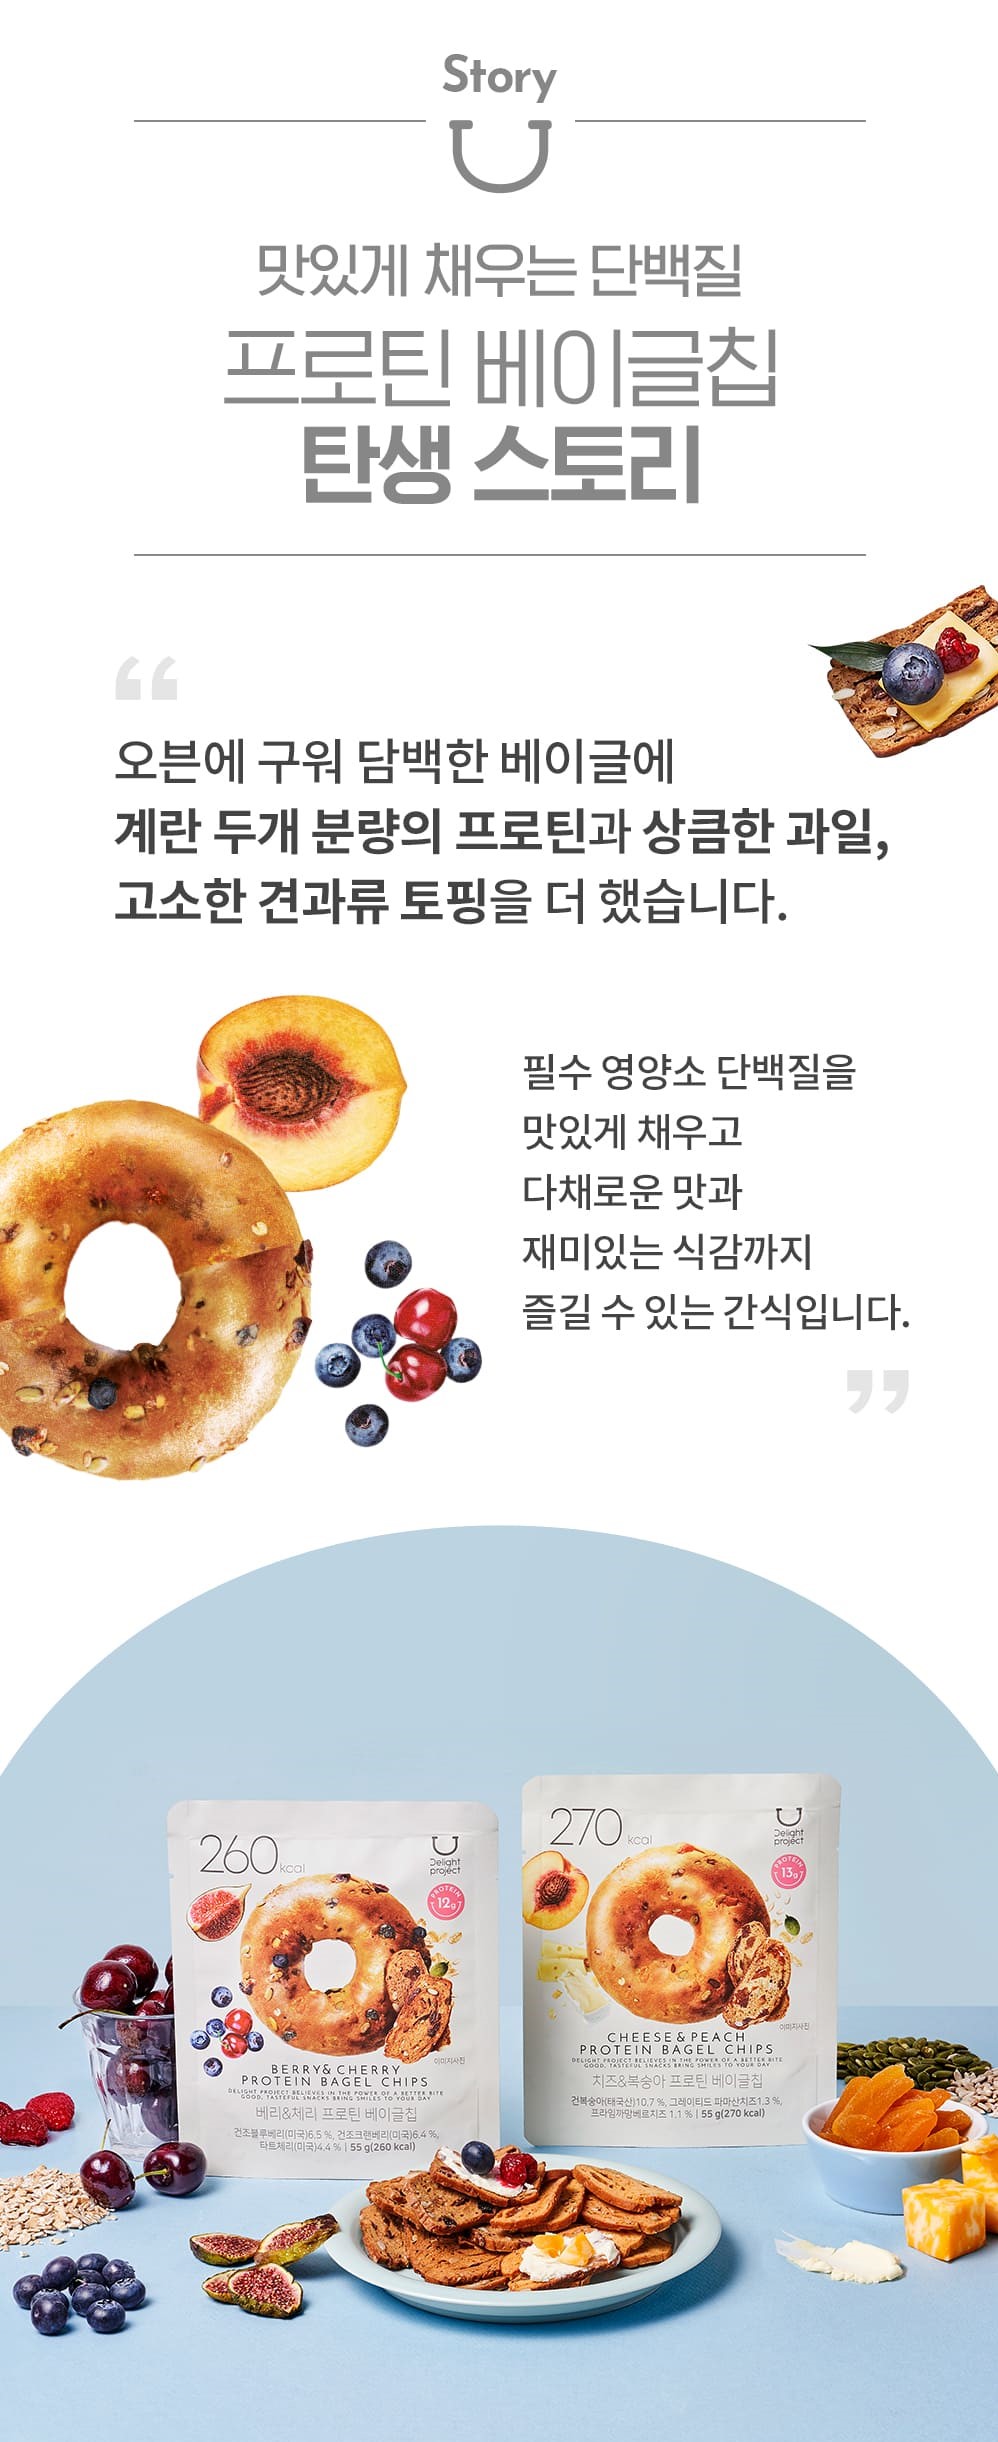 韓國食品-[딜라이트 프로젝트] 베이글칩 (치즈&복숭아) 55g